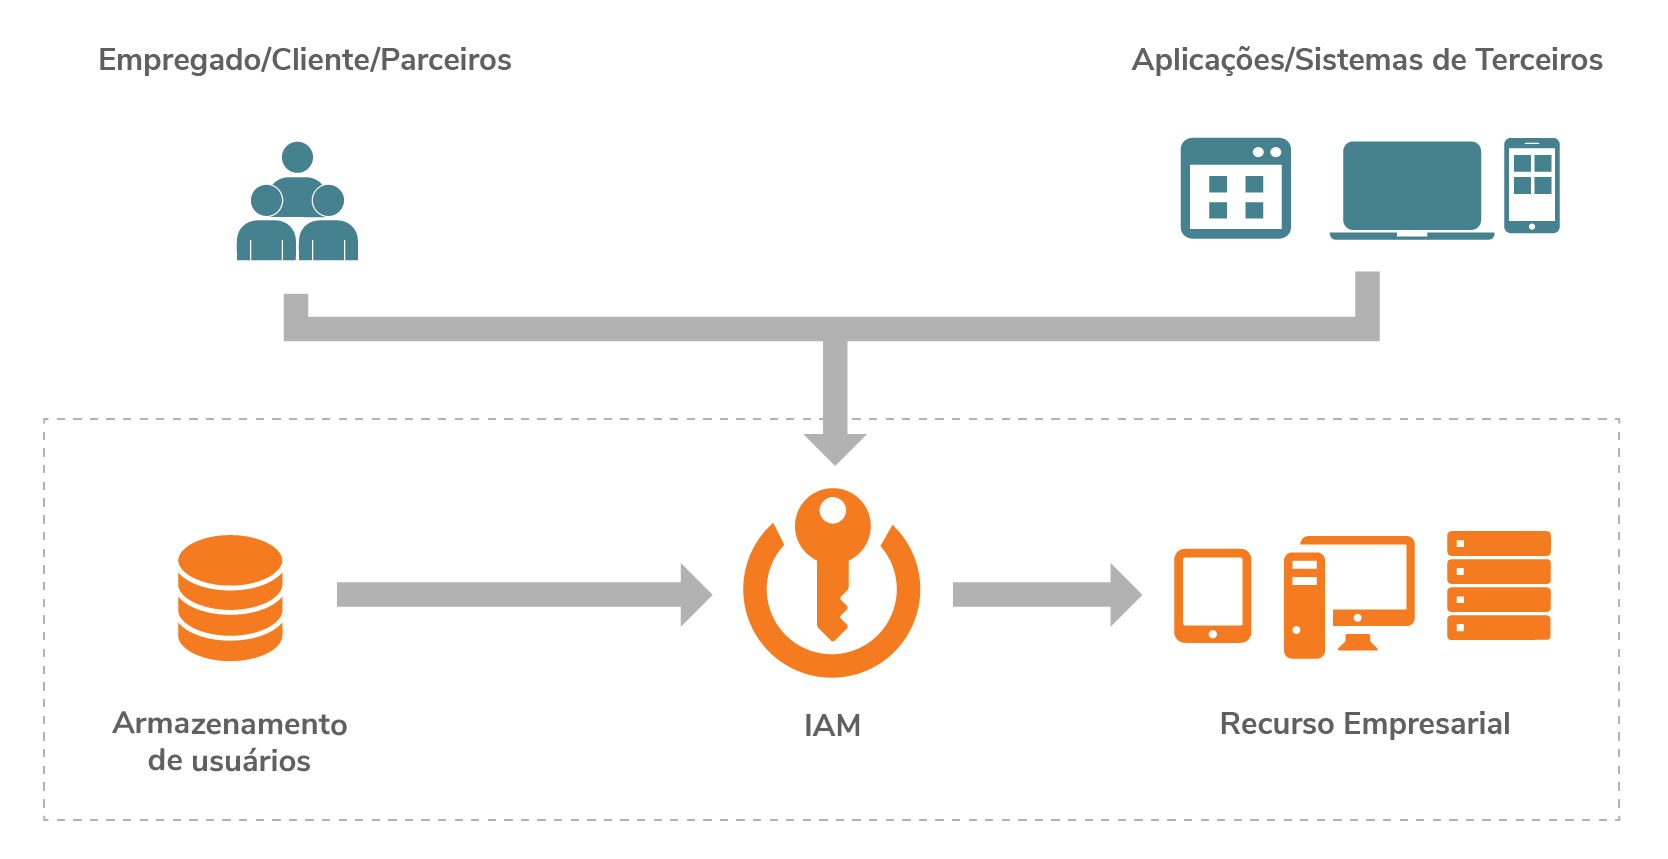 Traditional Cloud-based API management platform